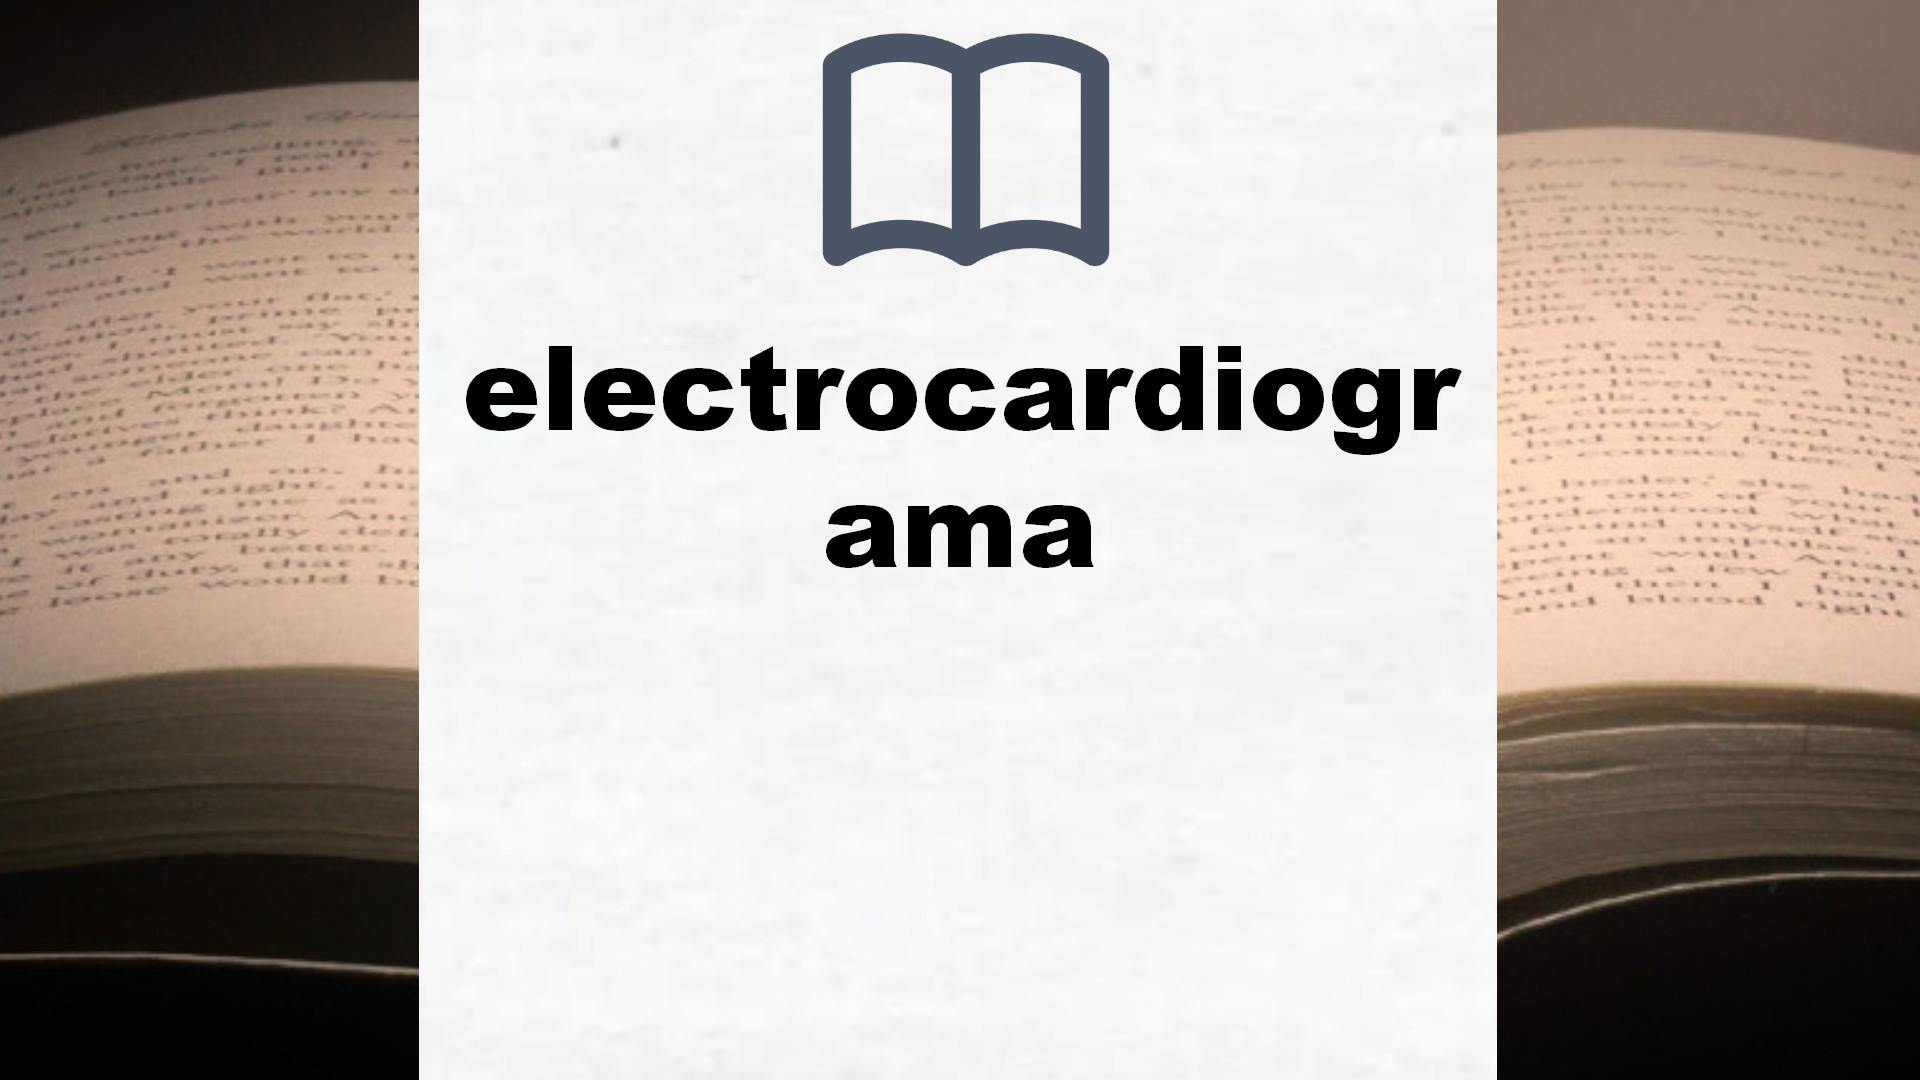 Libros sobre electrocardiograma